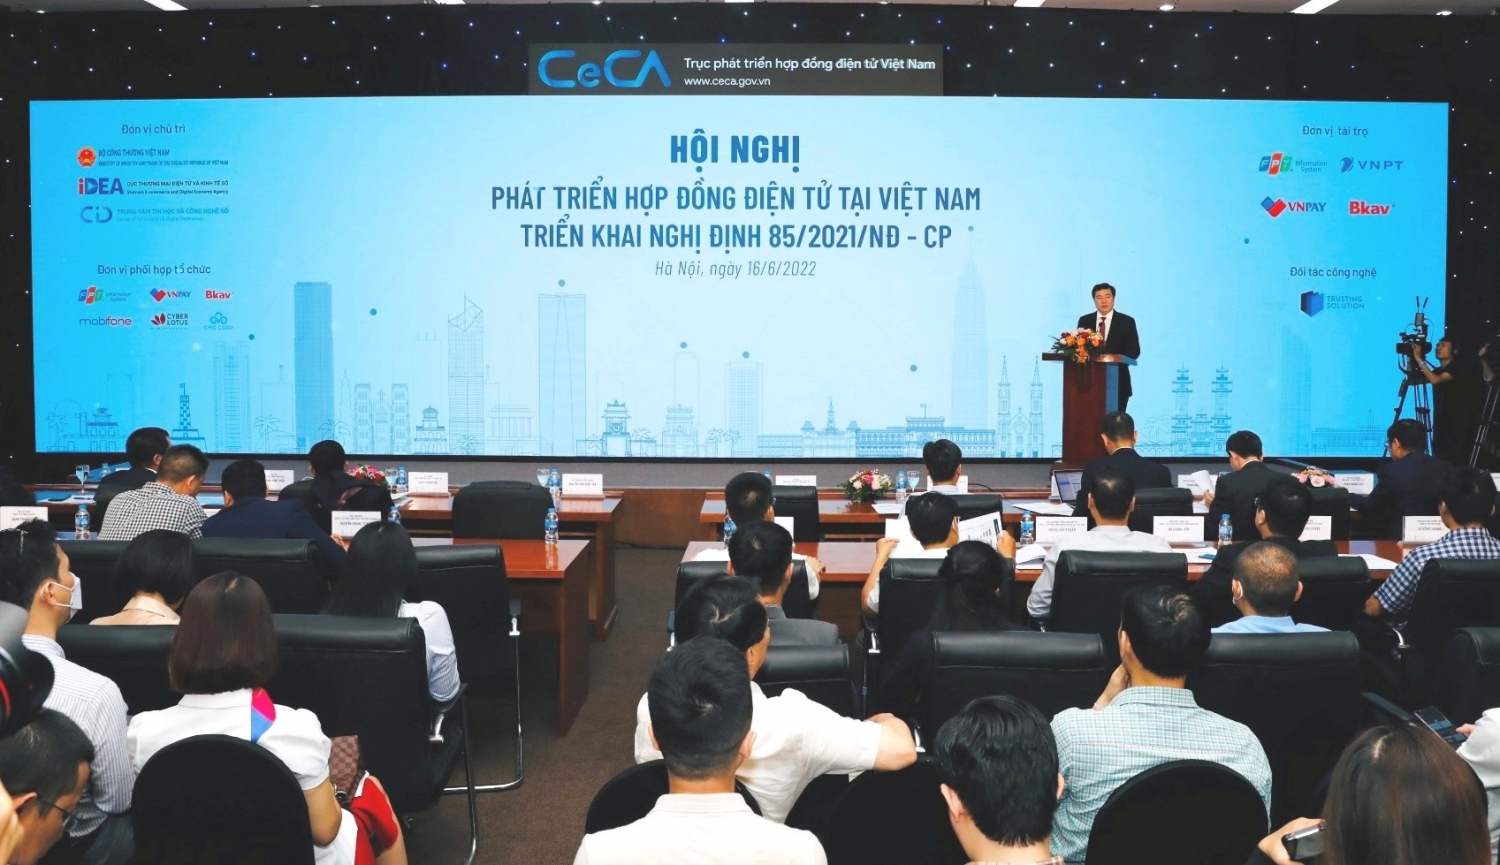 Đẩy mạnh phát triển hợp đồng điện tử tại Việt Nam